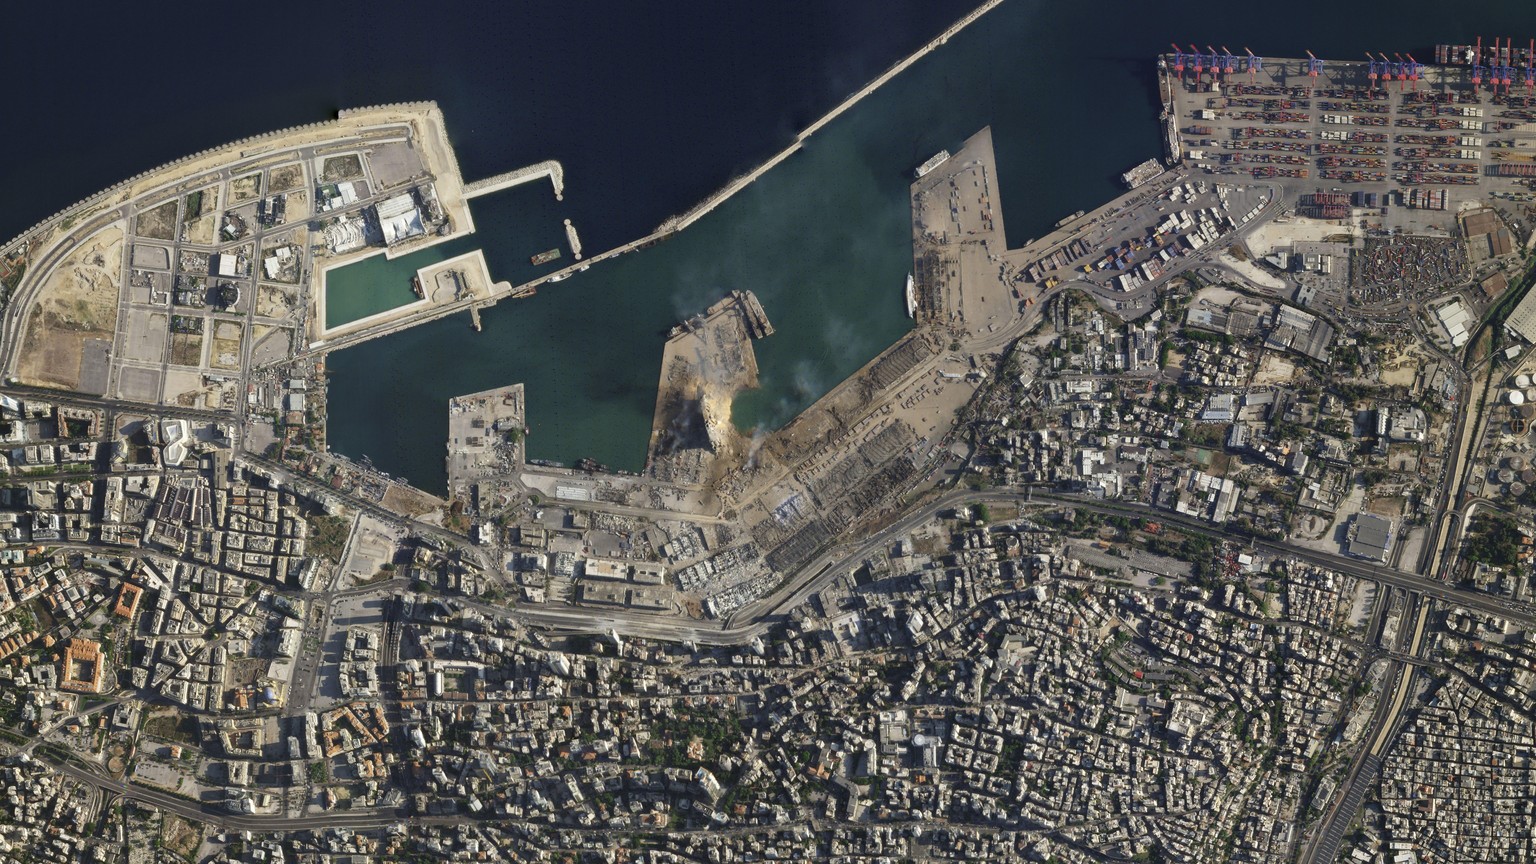 Satellitenbild zeigt einen gigantischen Krater da, wo sich im Hafen von Beirut eine gewaltige Explosion ereignet hatte. Der Hafen wurde fast vollständig zerstört.